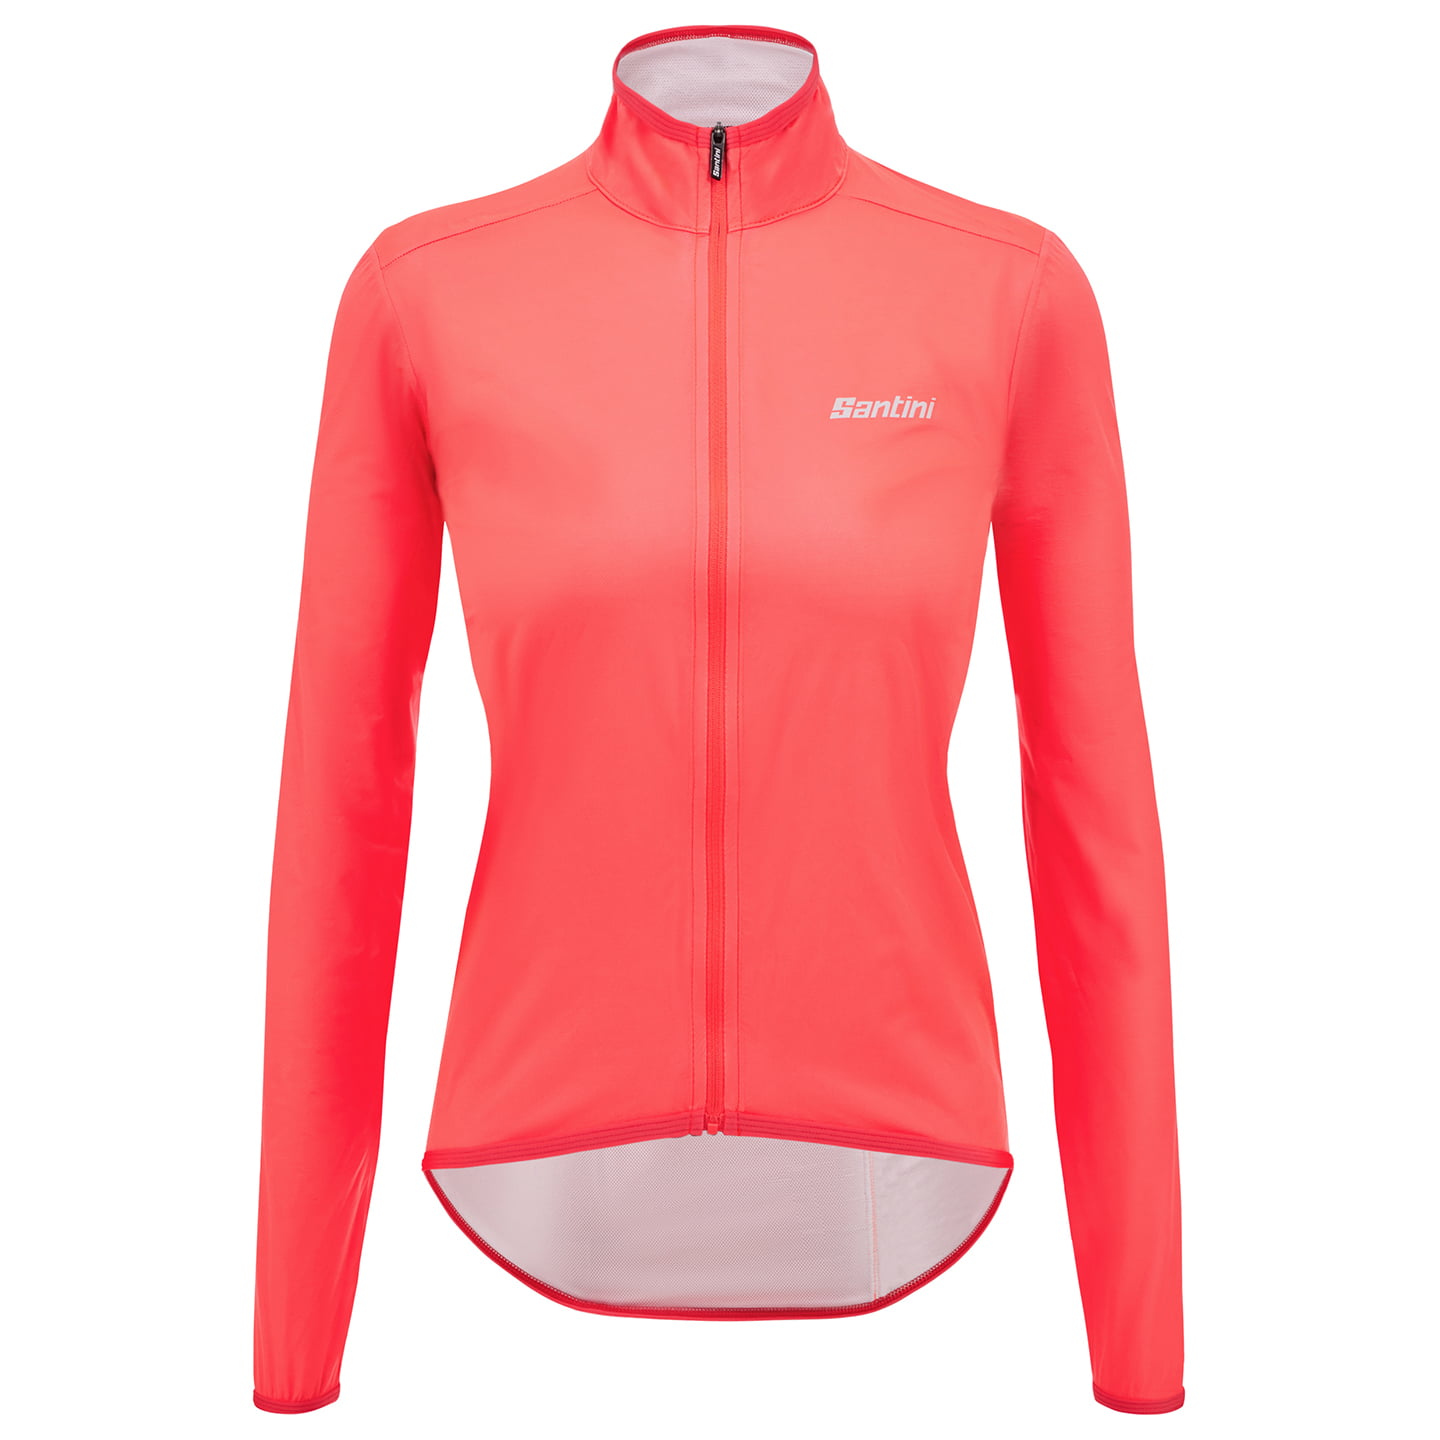 SANTINI Guard Nimbus Women Waterproof Jacket Women’s Waterproof Jacket, size M, Bike jacket, Cycling clothing